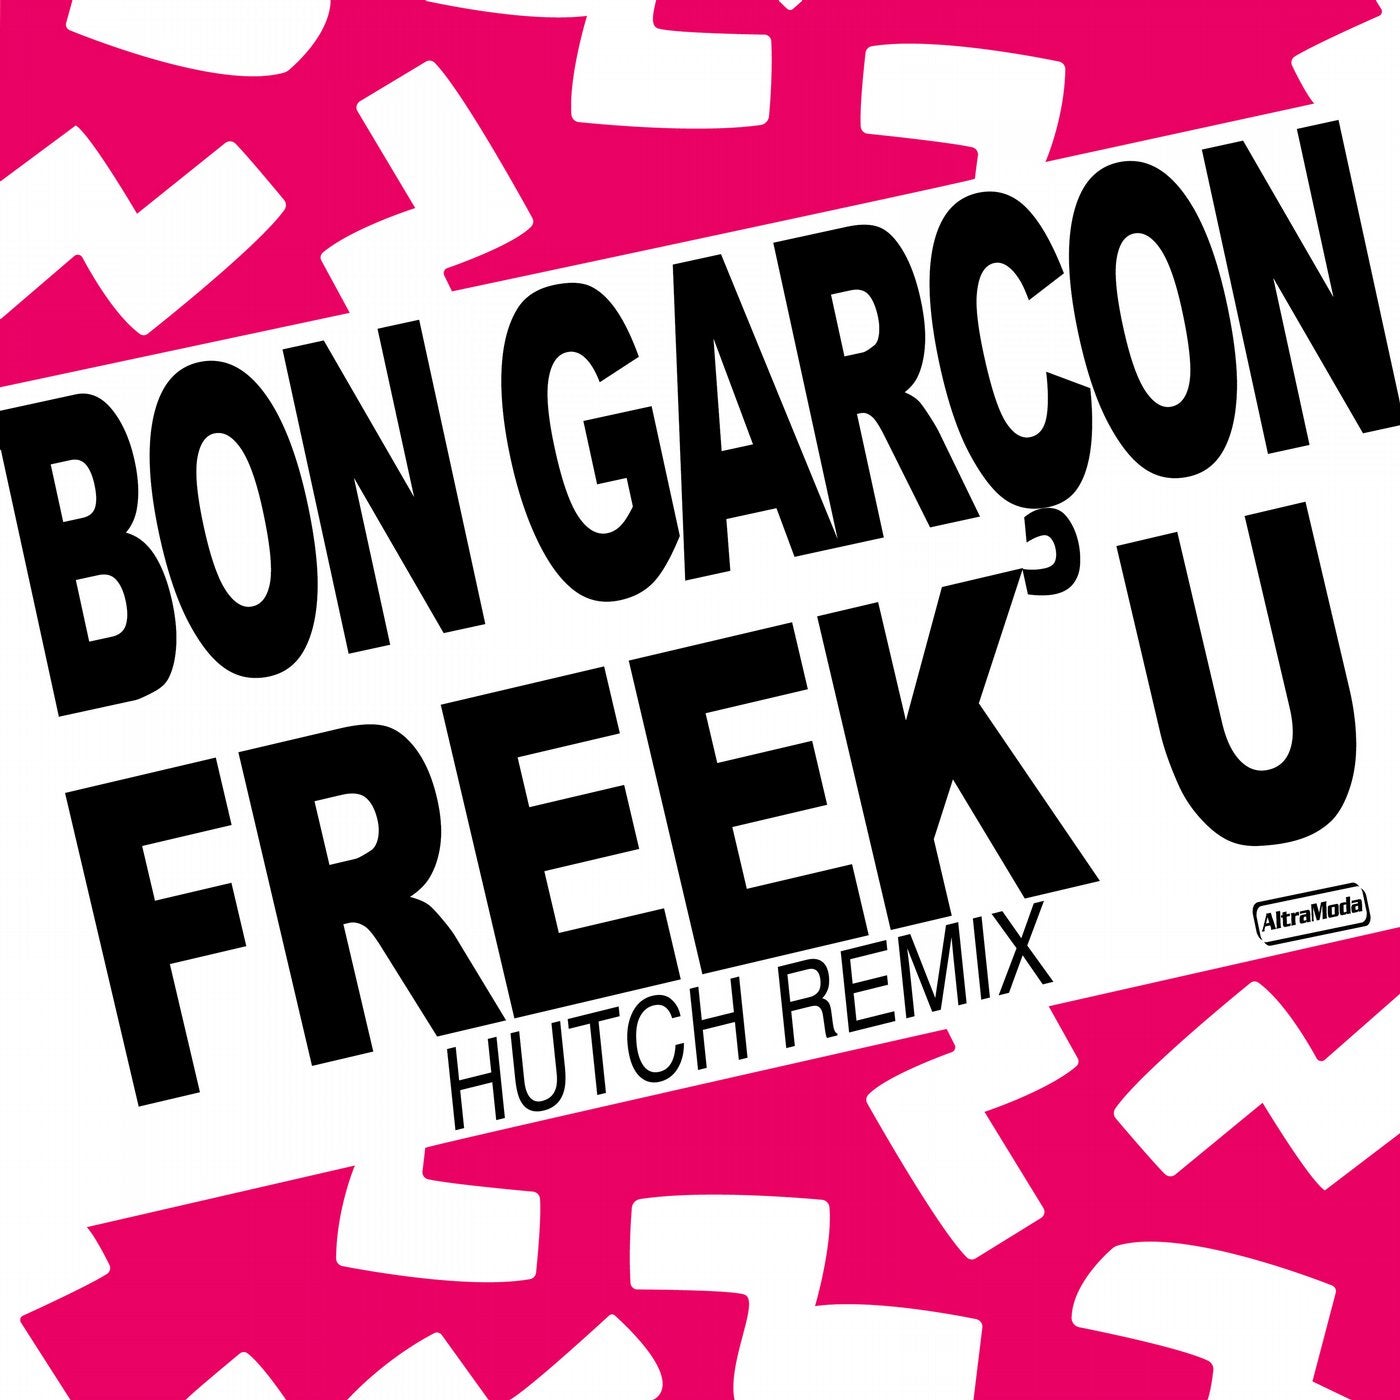 Freek U - Hutch Remix